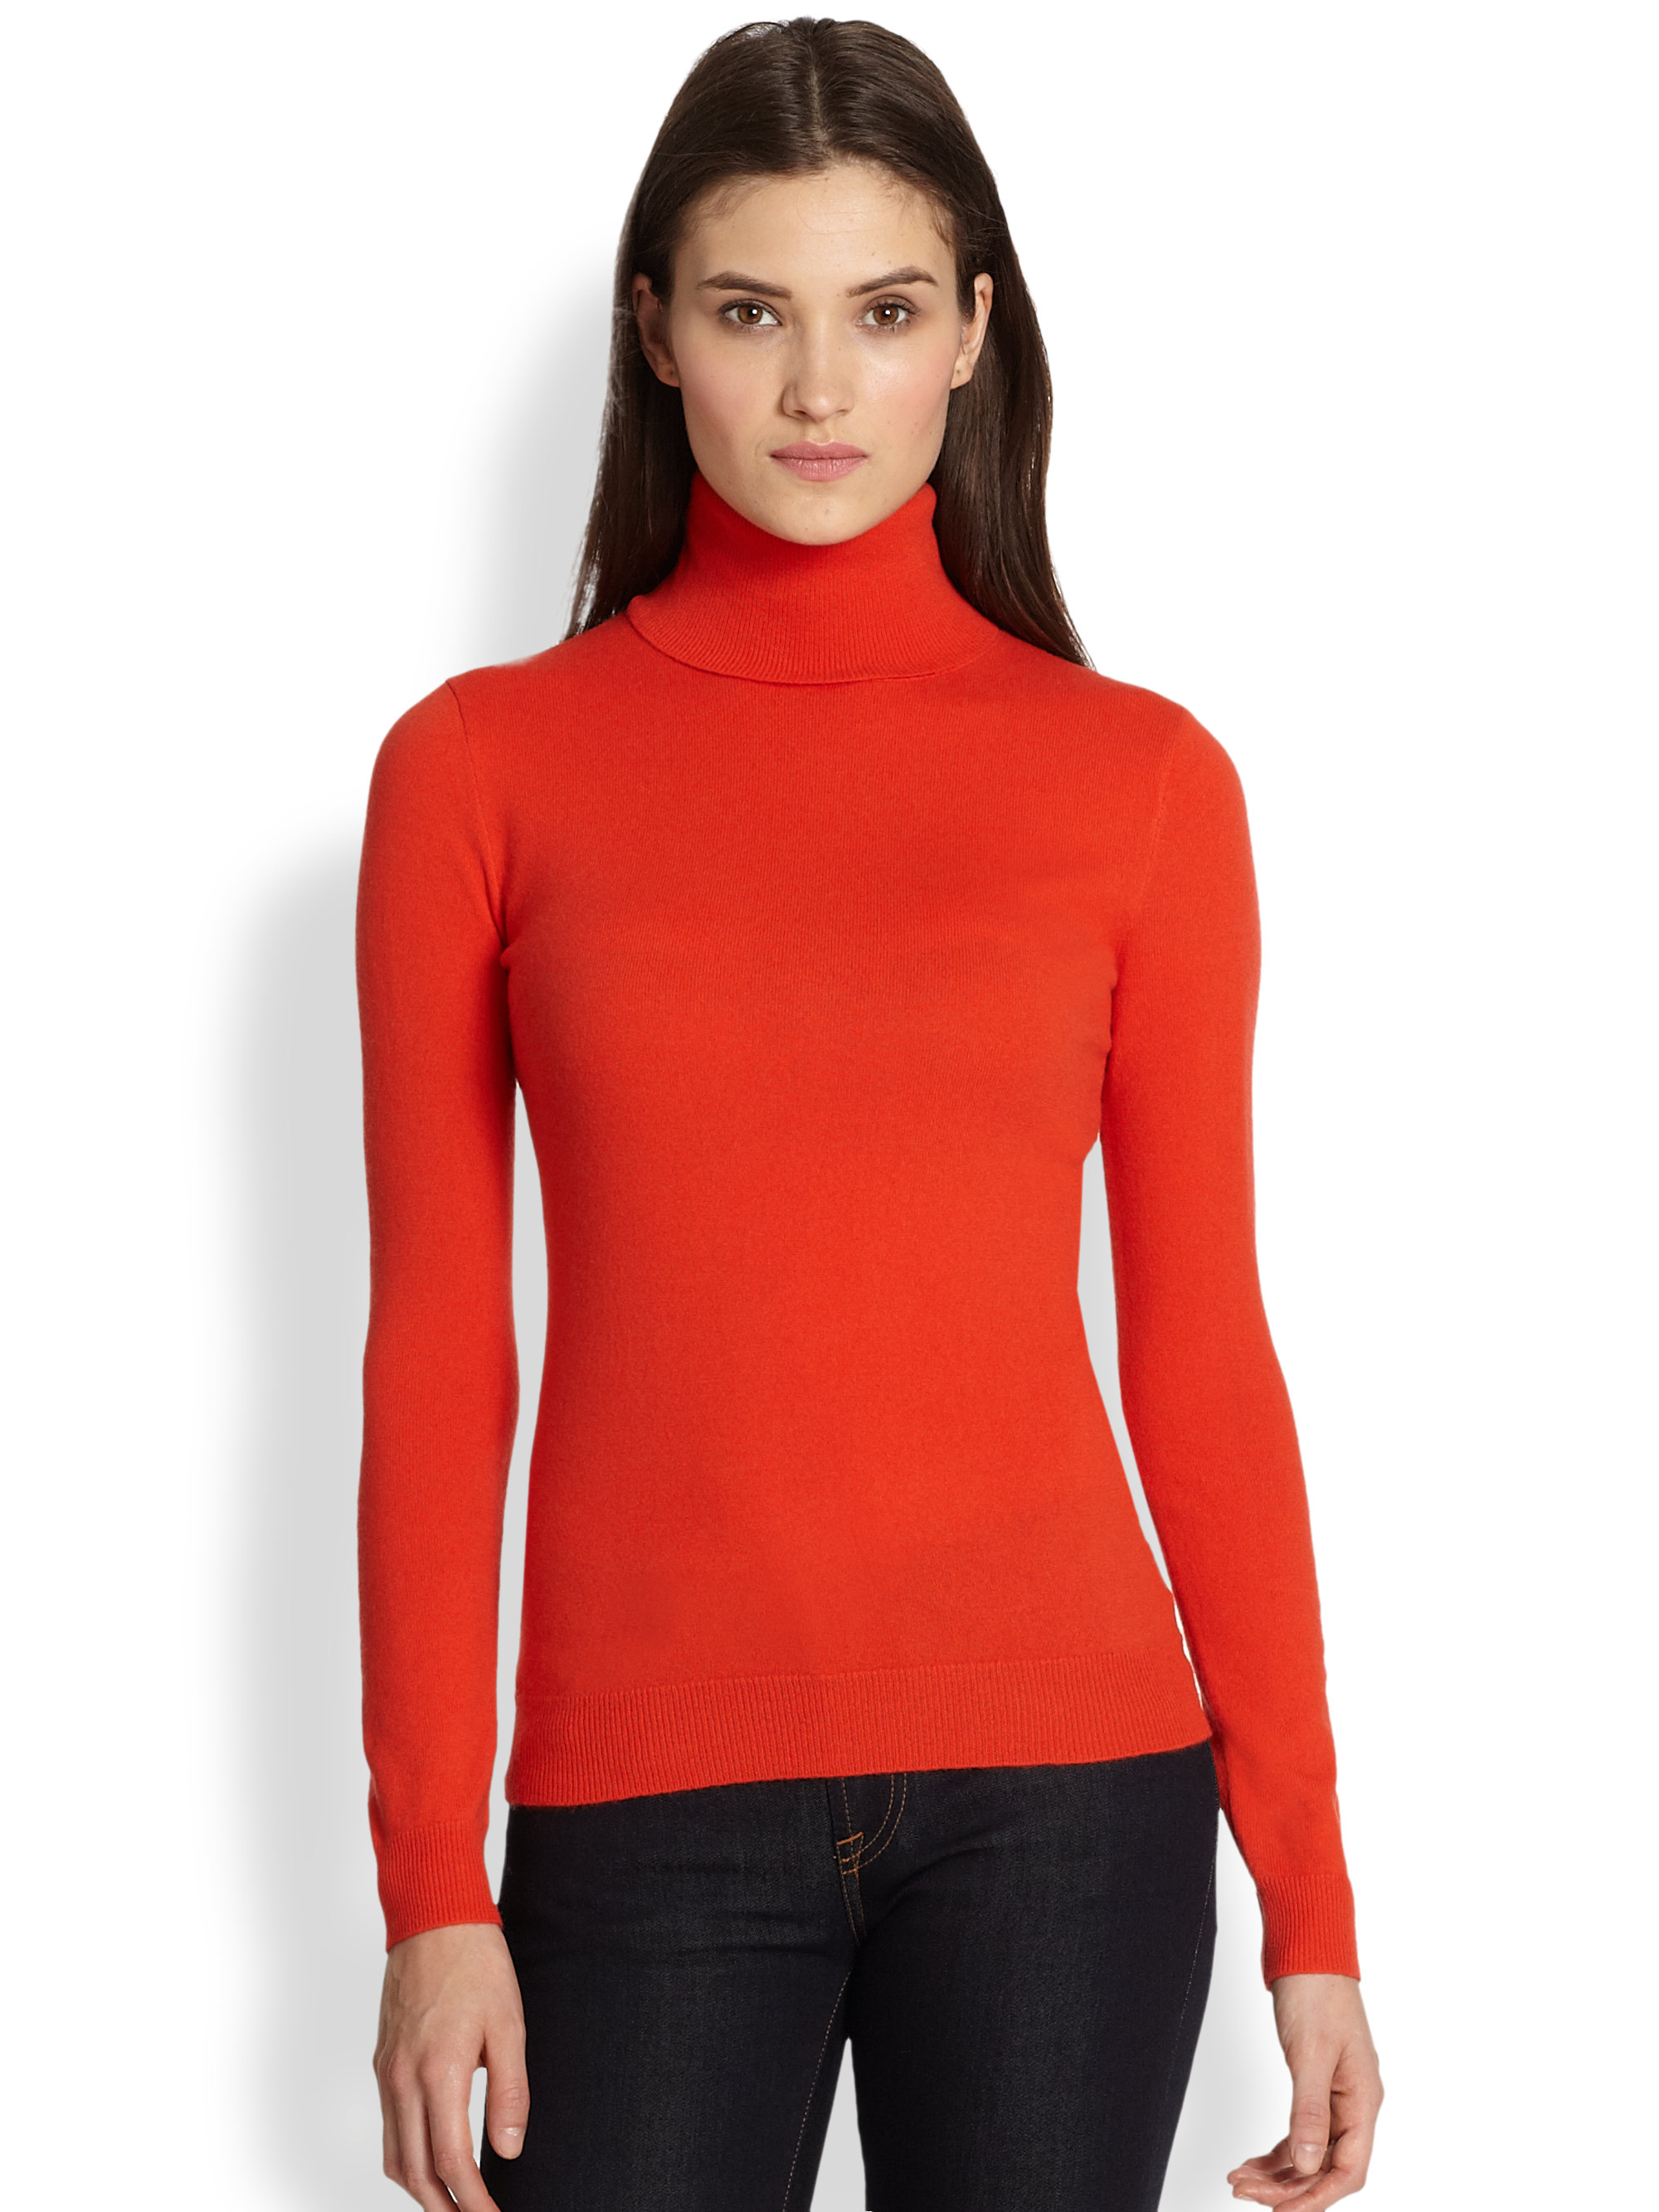 Top 86+ imagen ralph lauren cashmere turtleneck sweater - Thptnganamst ...